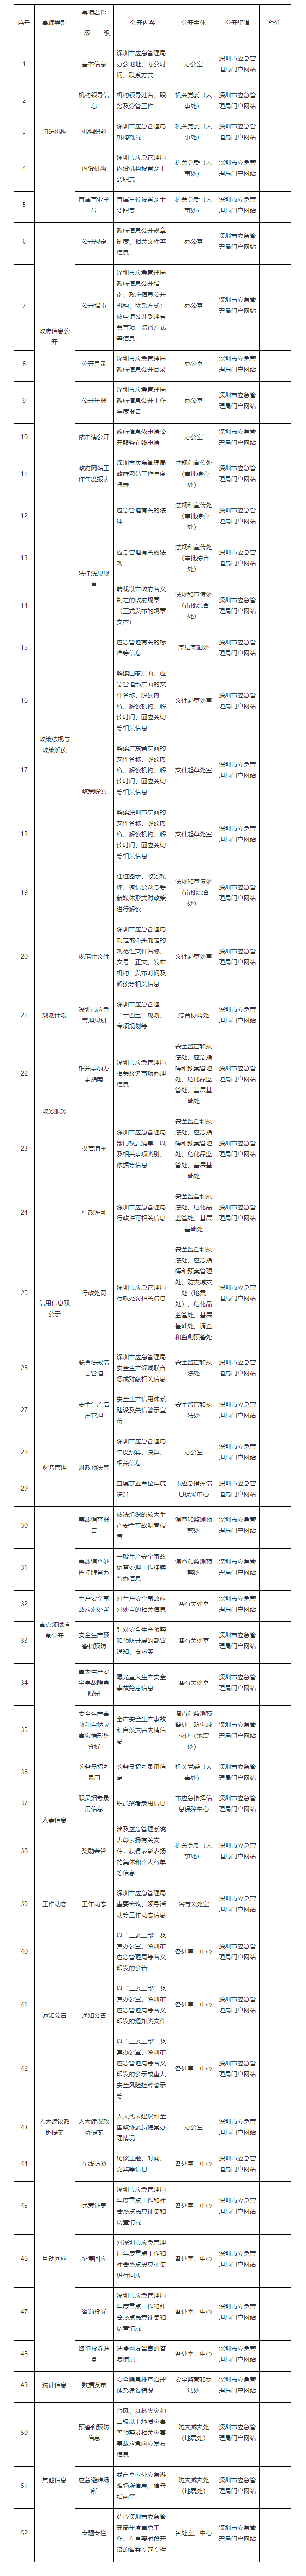 深圳市应急管理局主动公开基本目录-通知公告-深圳市应急管理局-2.png